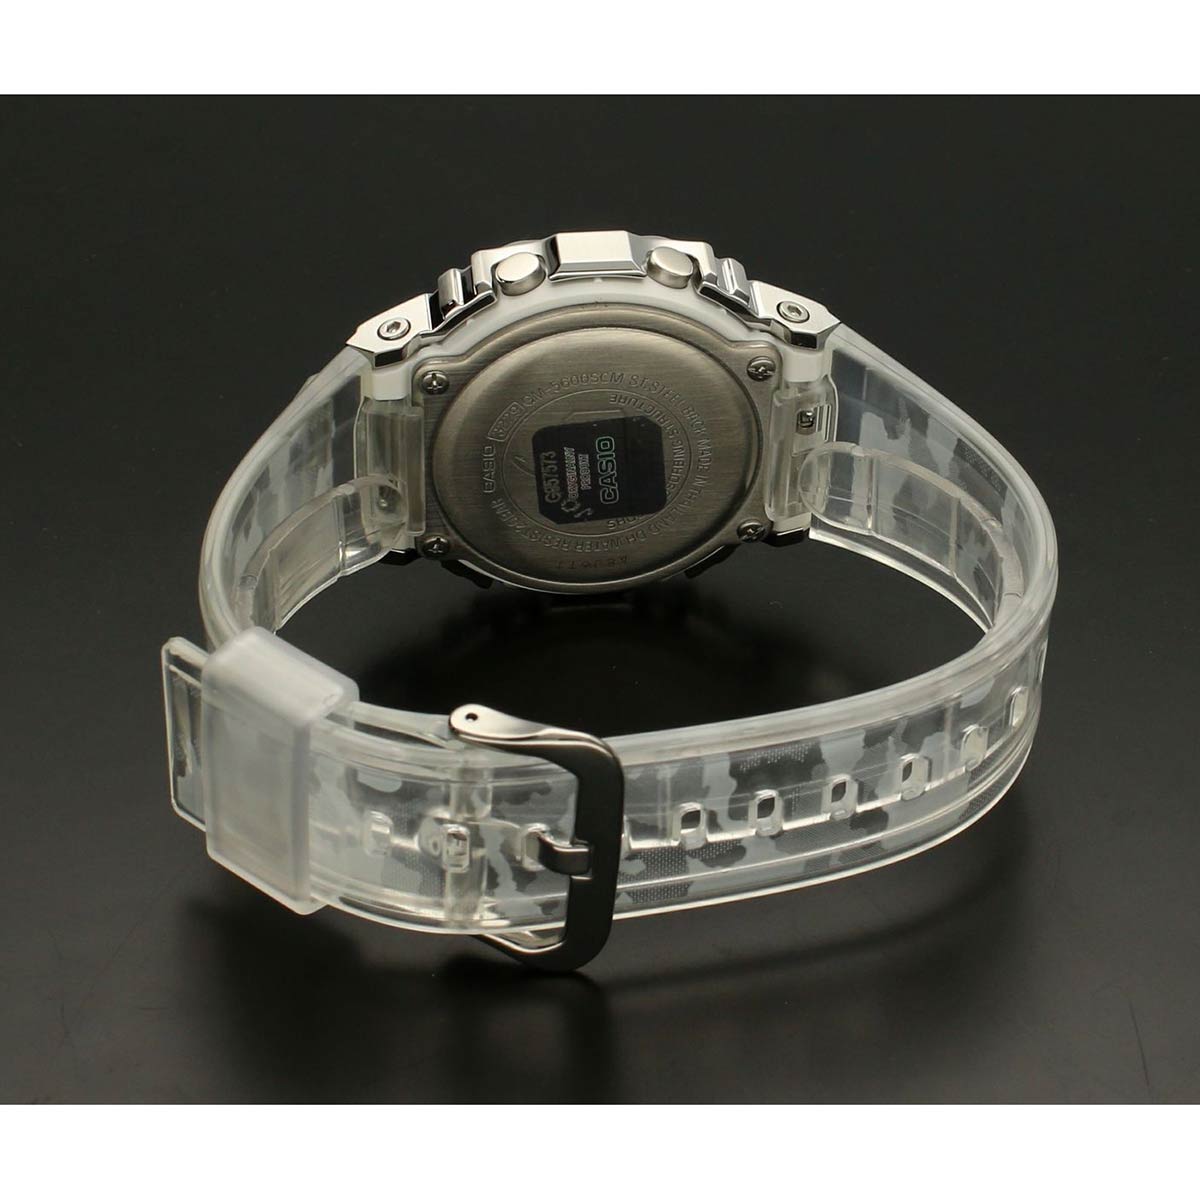 Часовник Casio G-Shock GM-5600SCM-1ER